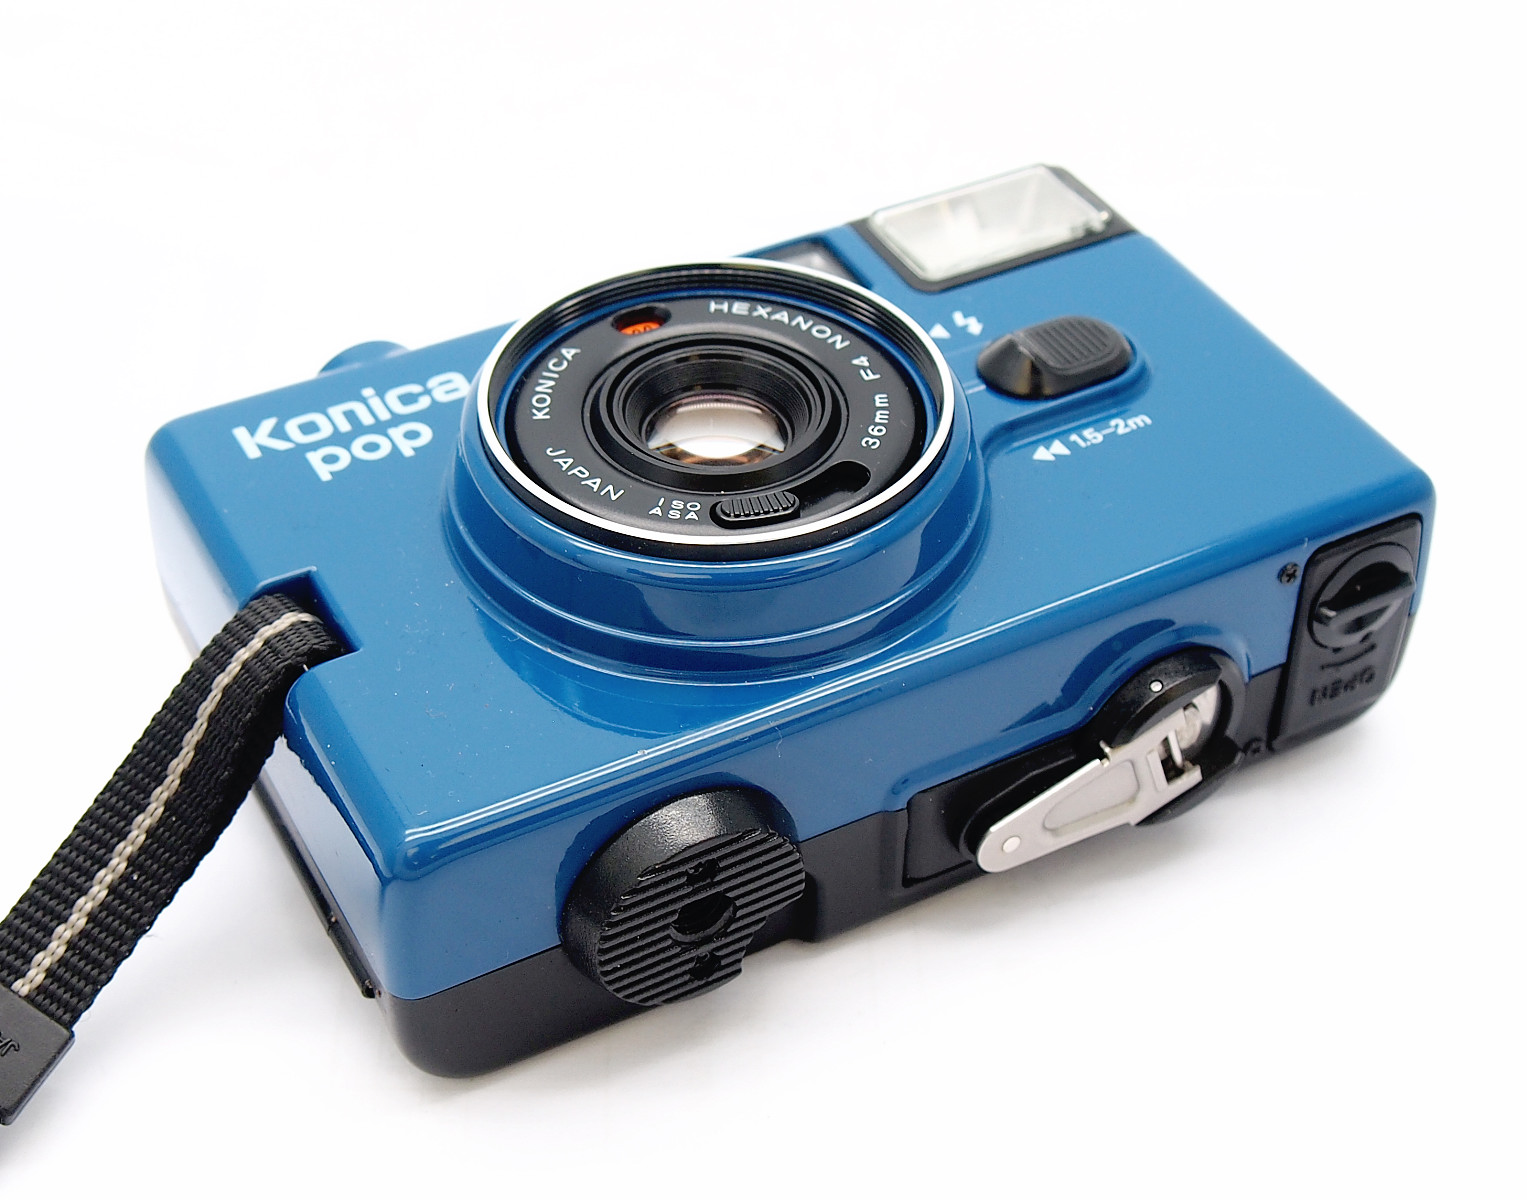 Konica Pop 35mm Point & Shoot in Blue #8481